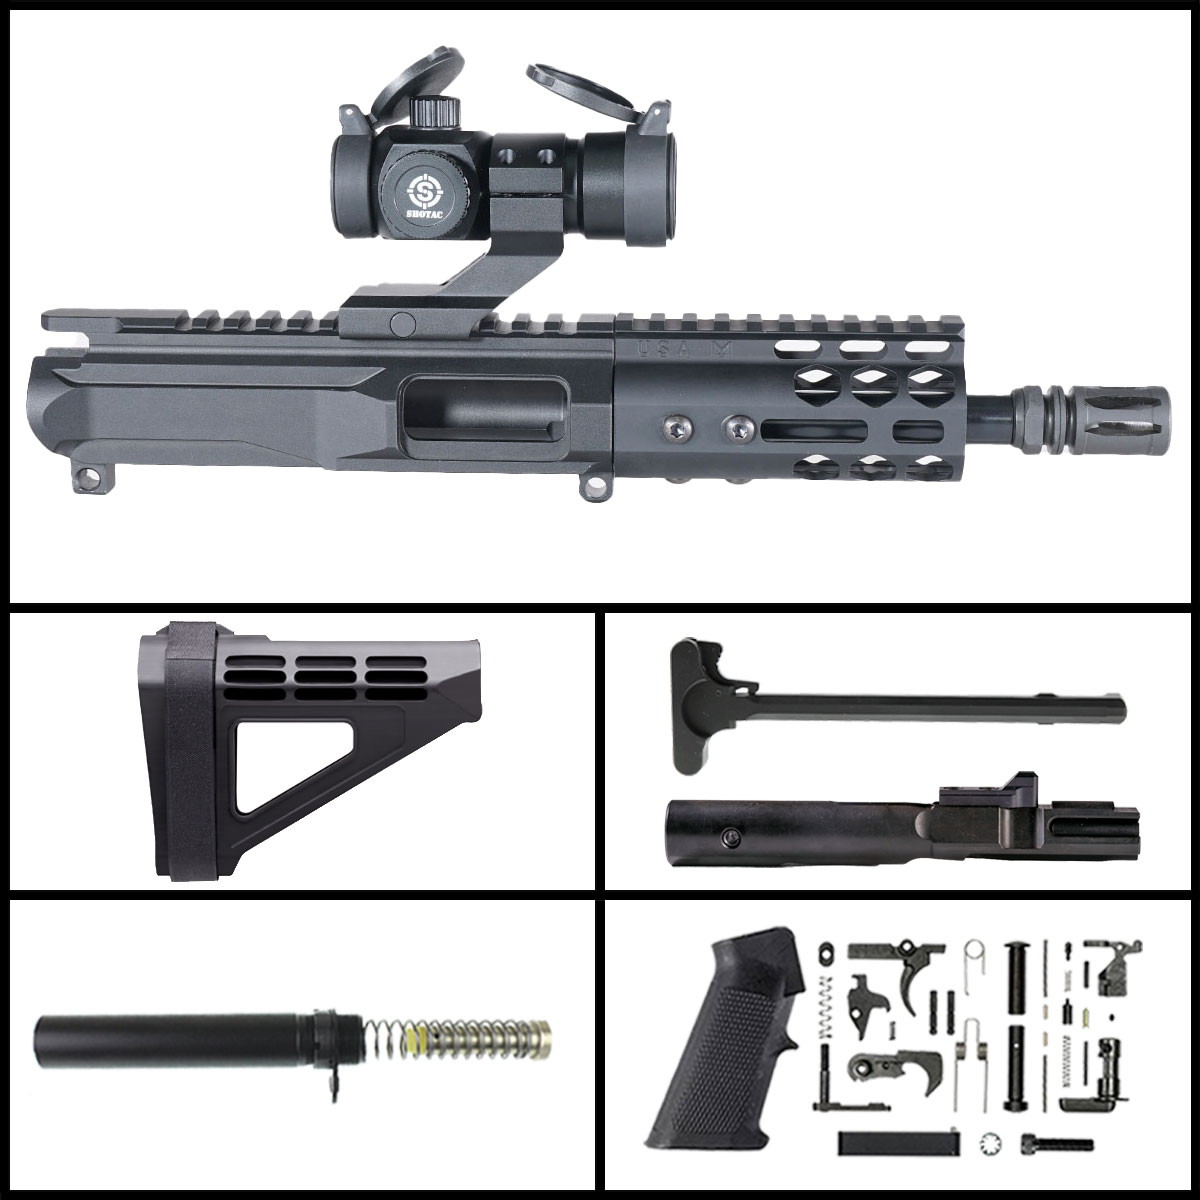 DTT 'H.V.T Gen 2 w/ Shotac Cantilever' 6-inch AR-15 9mm Nitride Pistol Full Build Kit